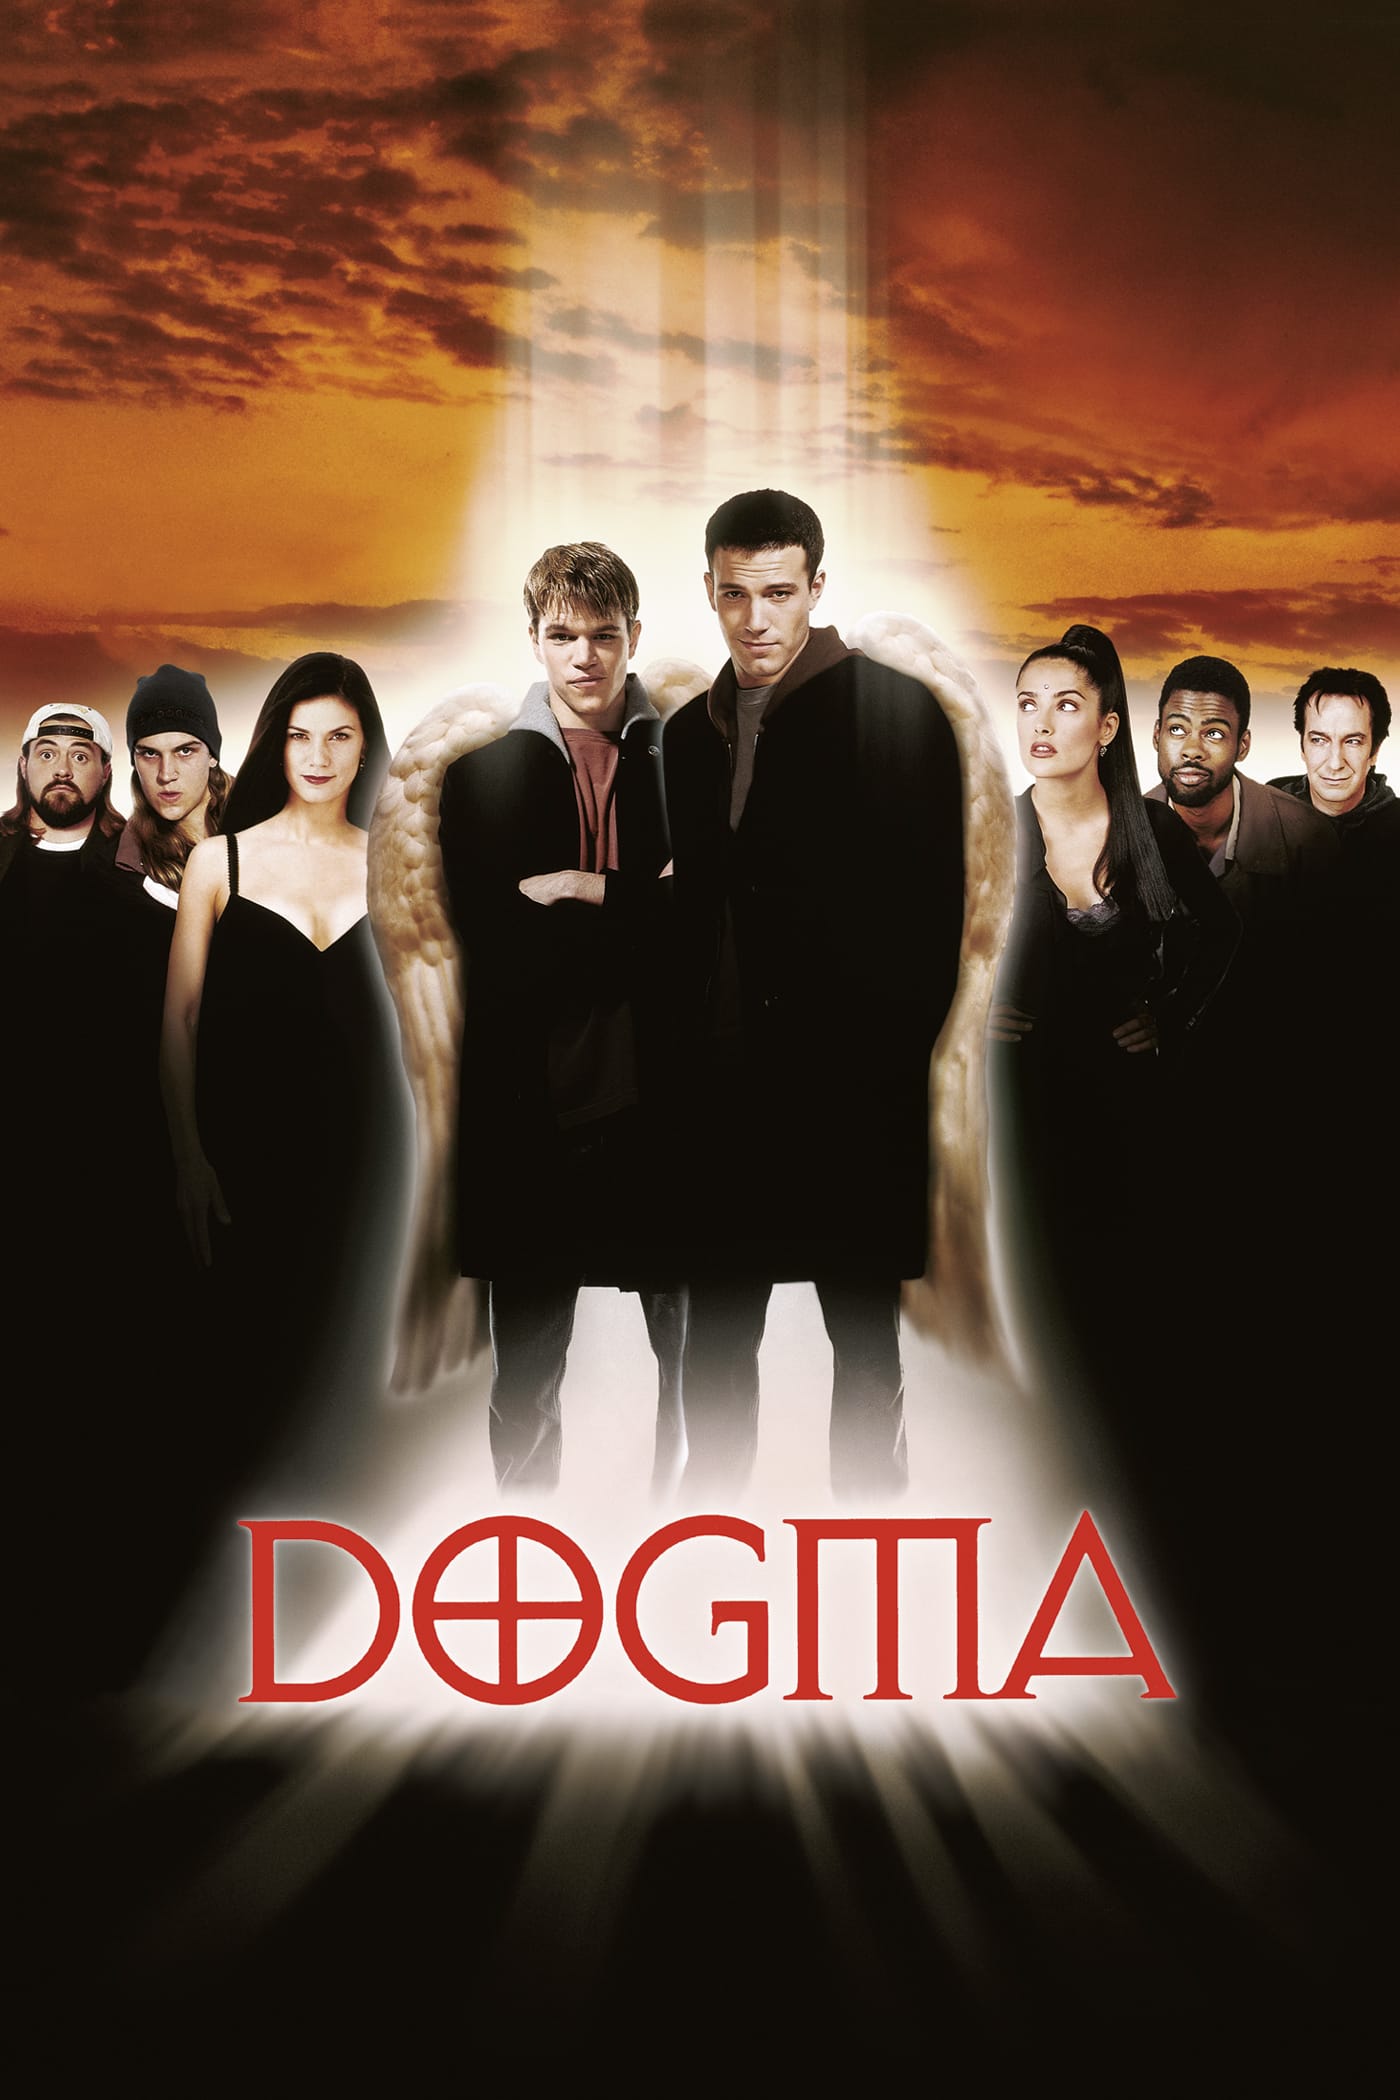 Plakat von "Dogma"